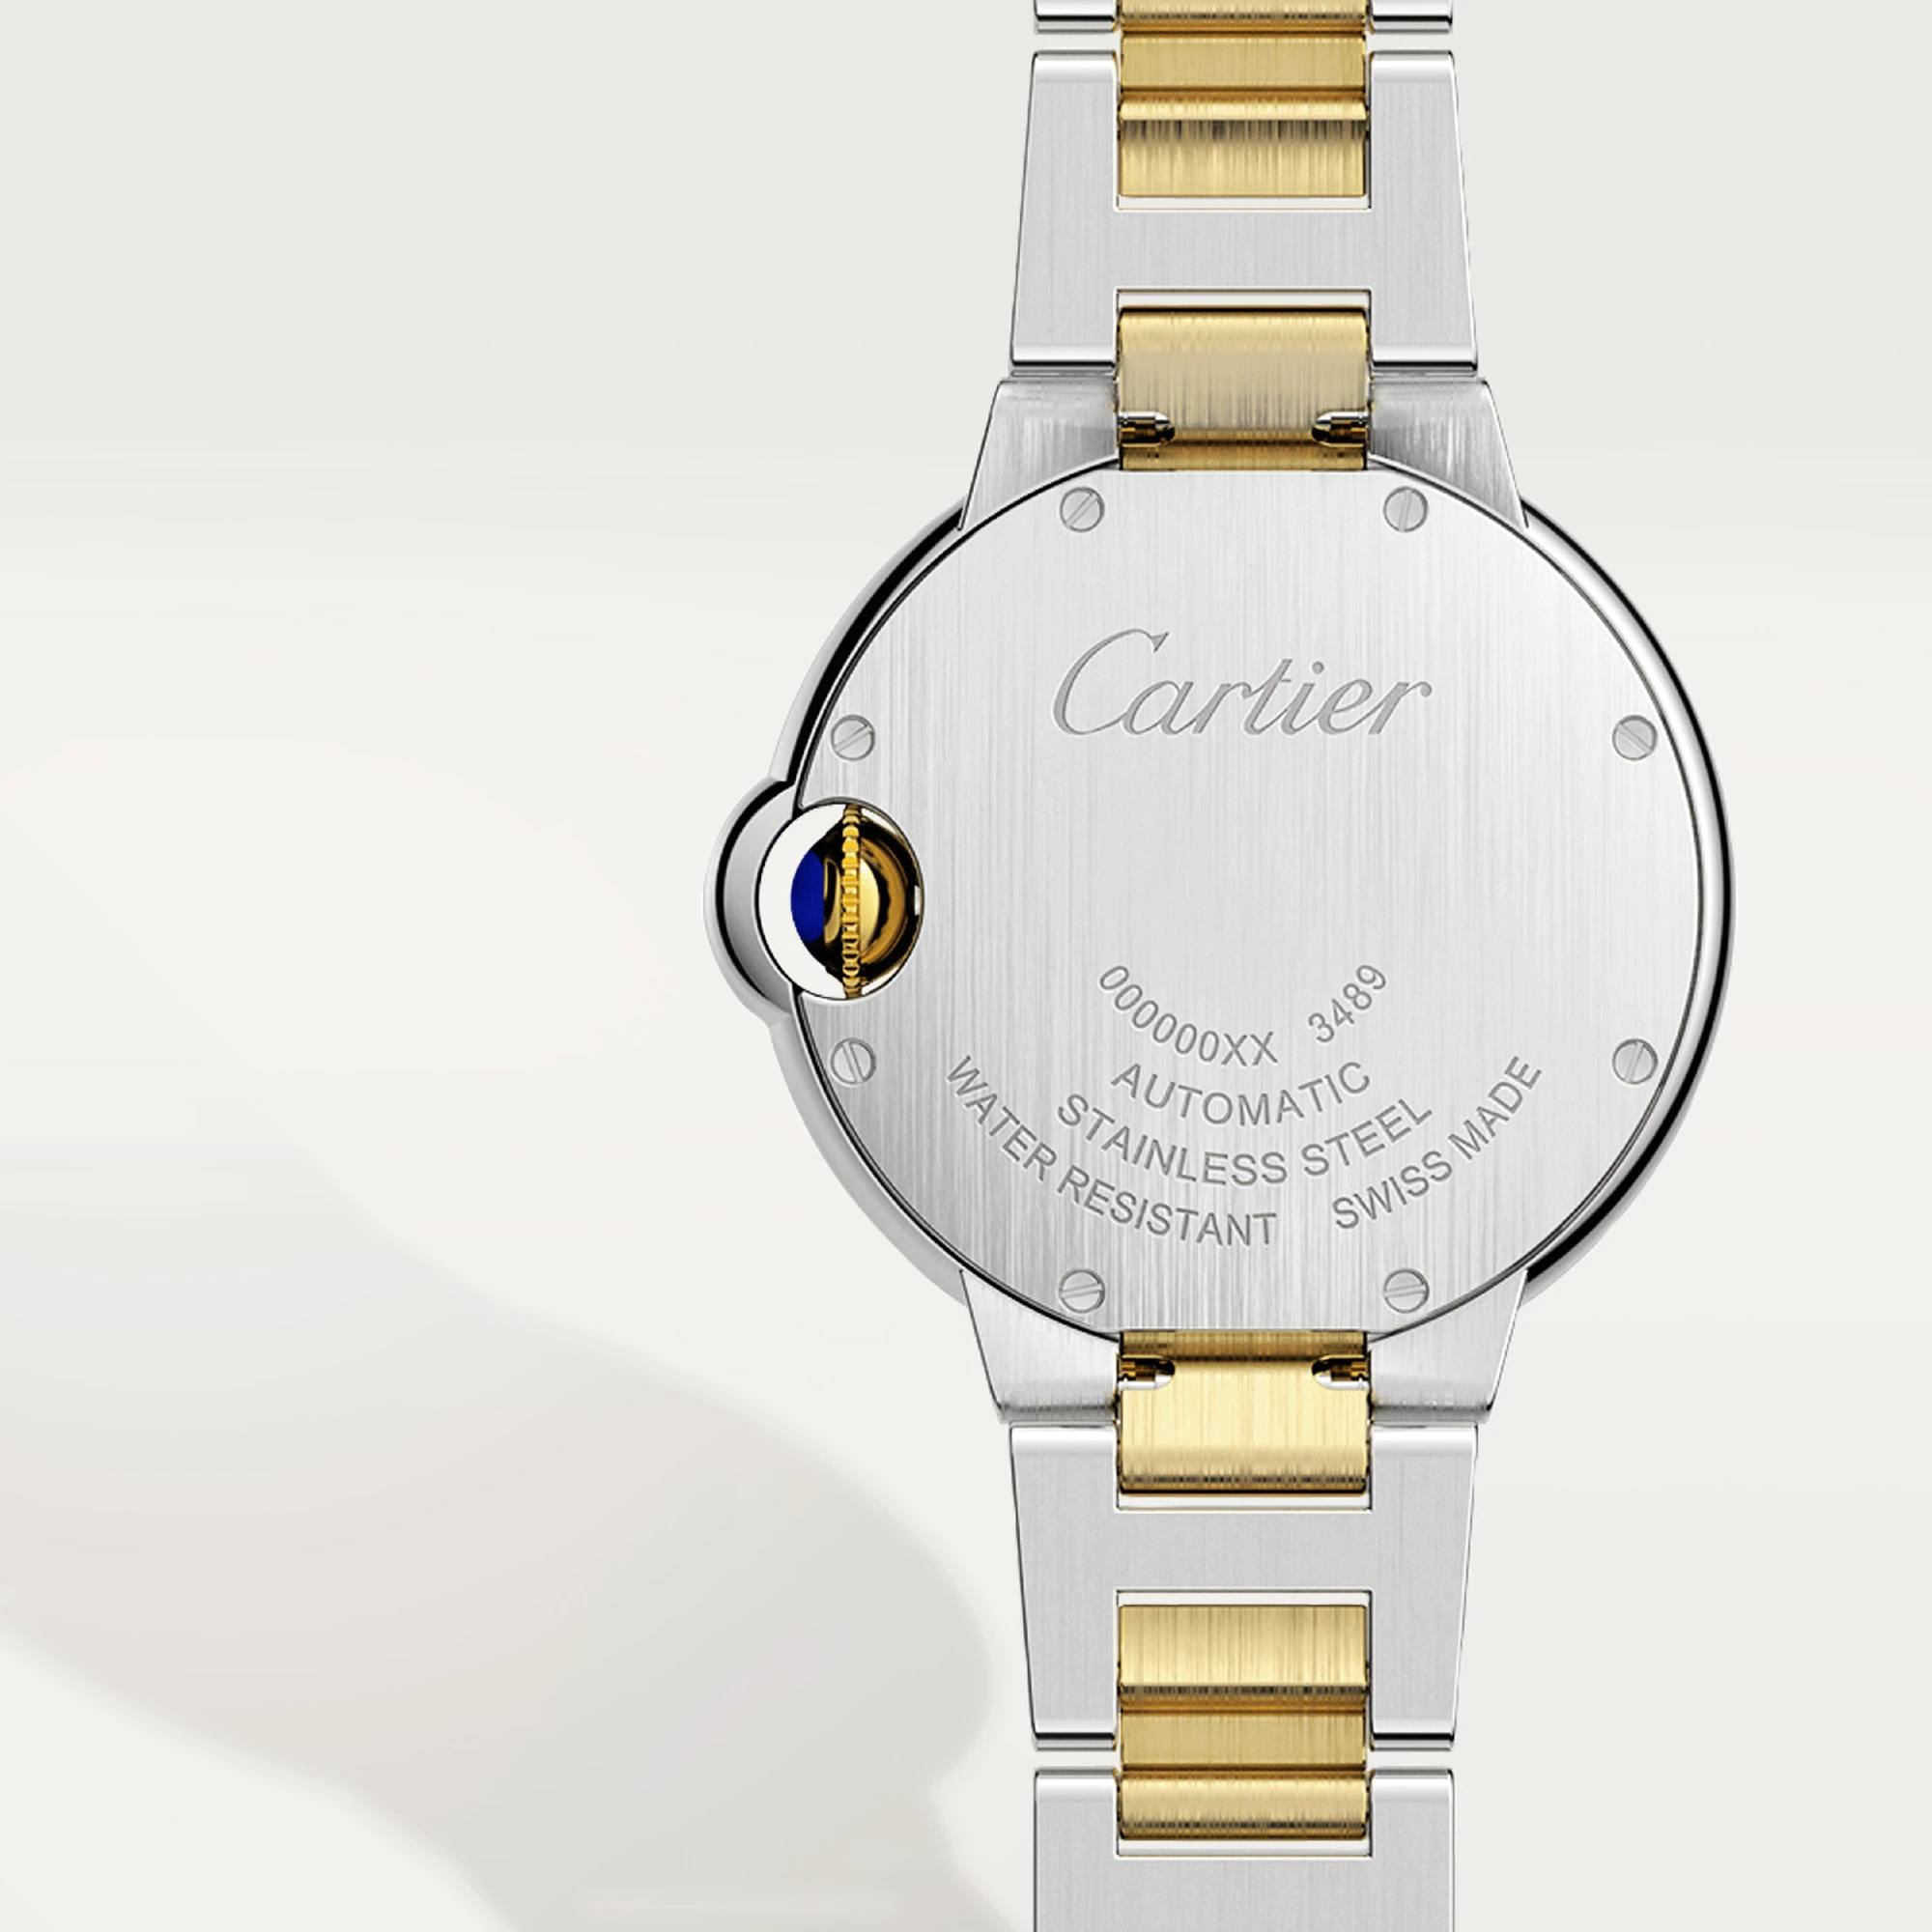 Ballon Bleu de Cartier Watch, Steel and Yellow Gold, 33mm
